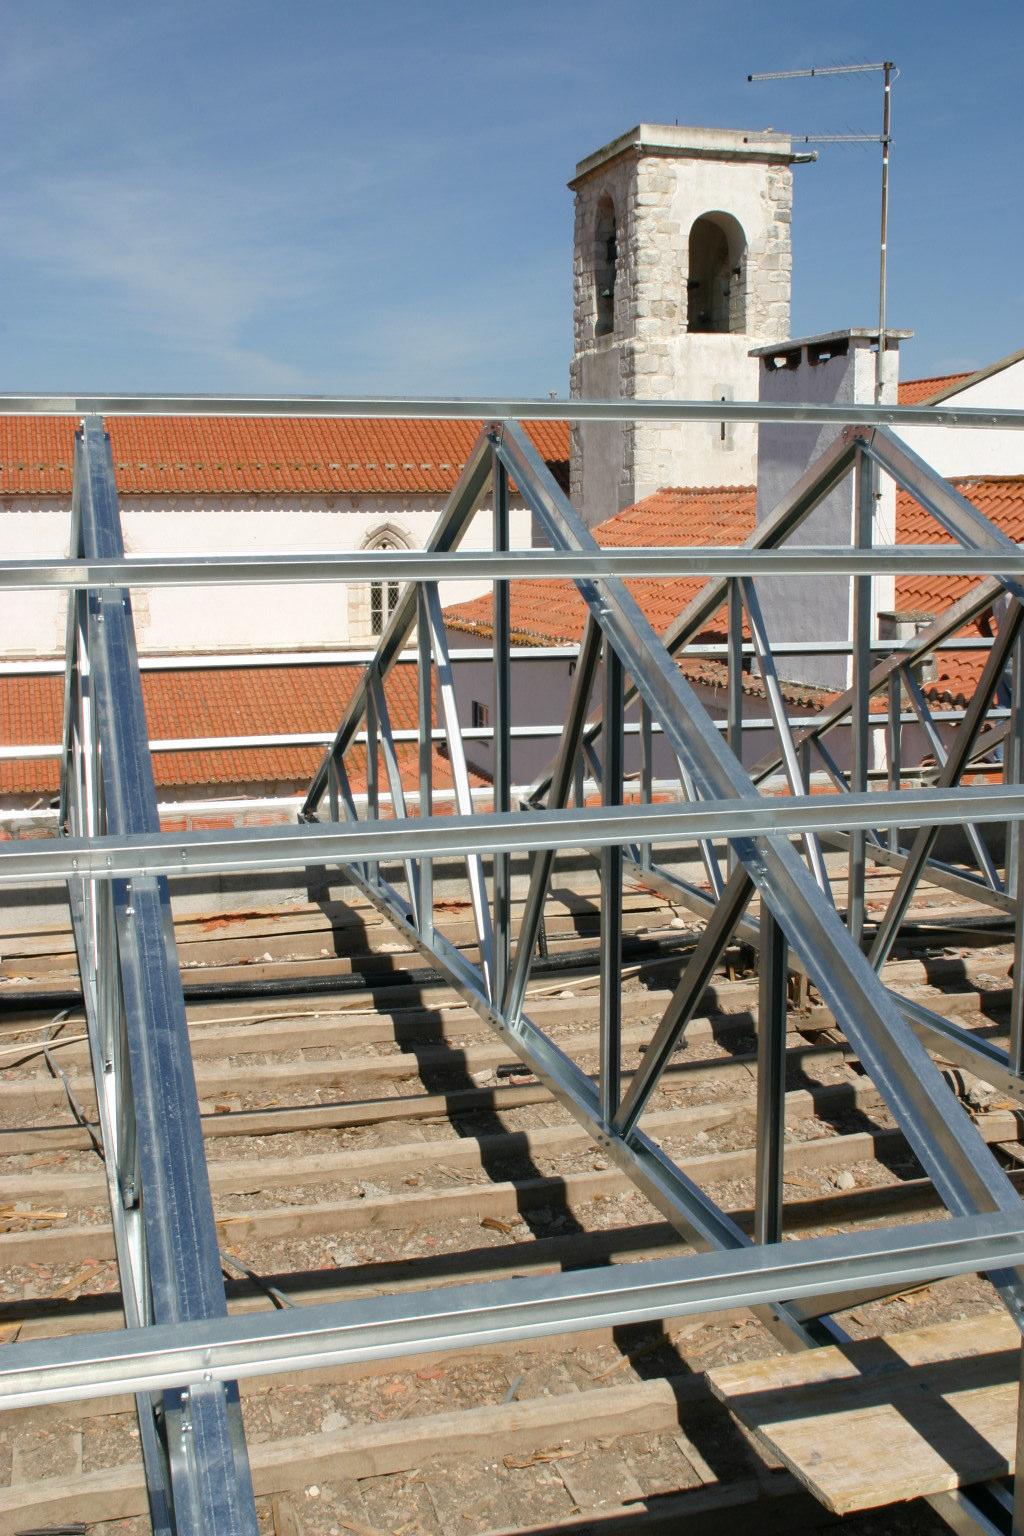 Instalação TECTUM especializada frequentaram os cursos instaladores formação específicos para instalação telhados TECTUM, fornecidos pela Lusoceram. 3.